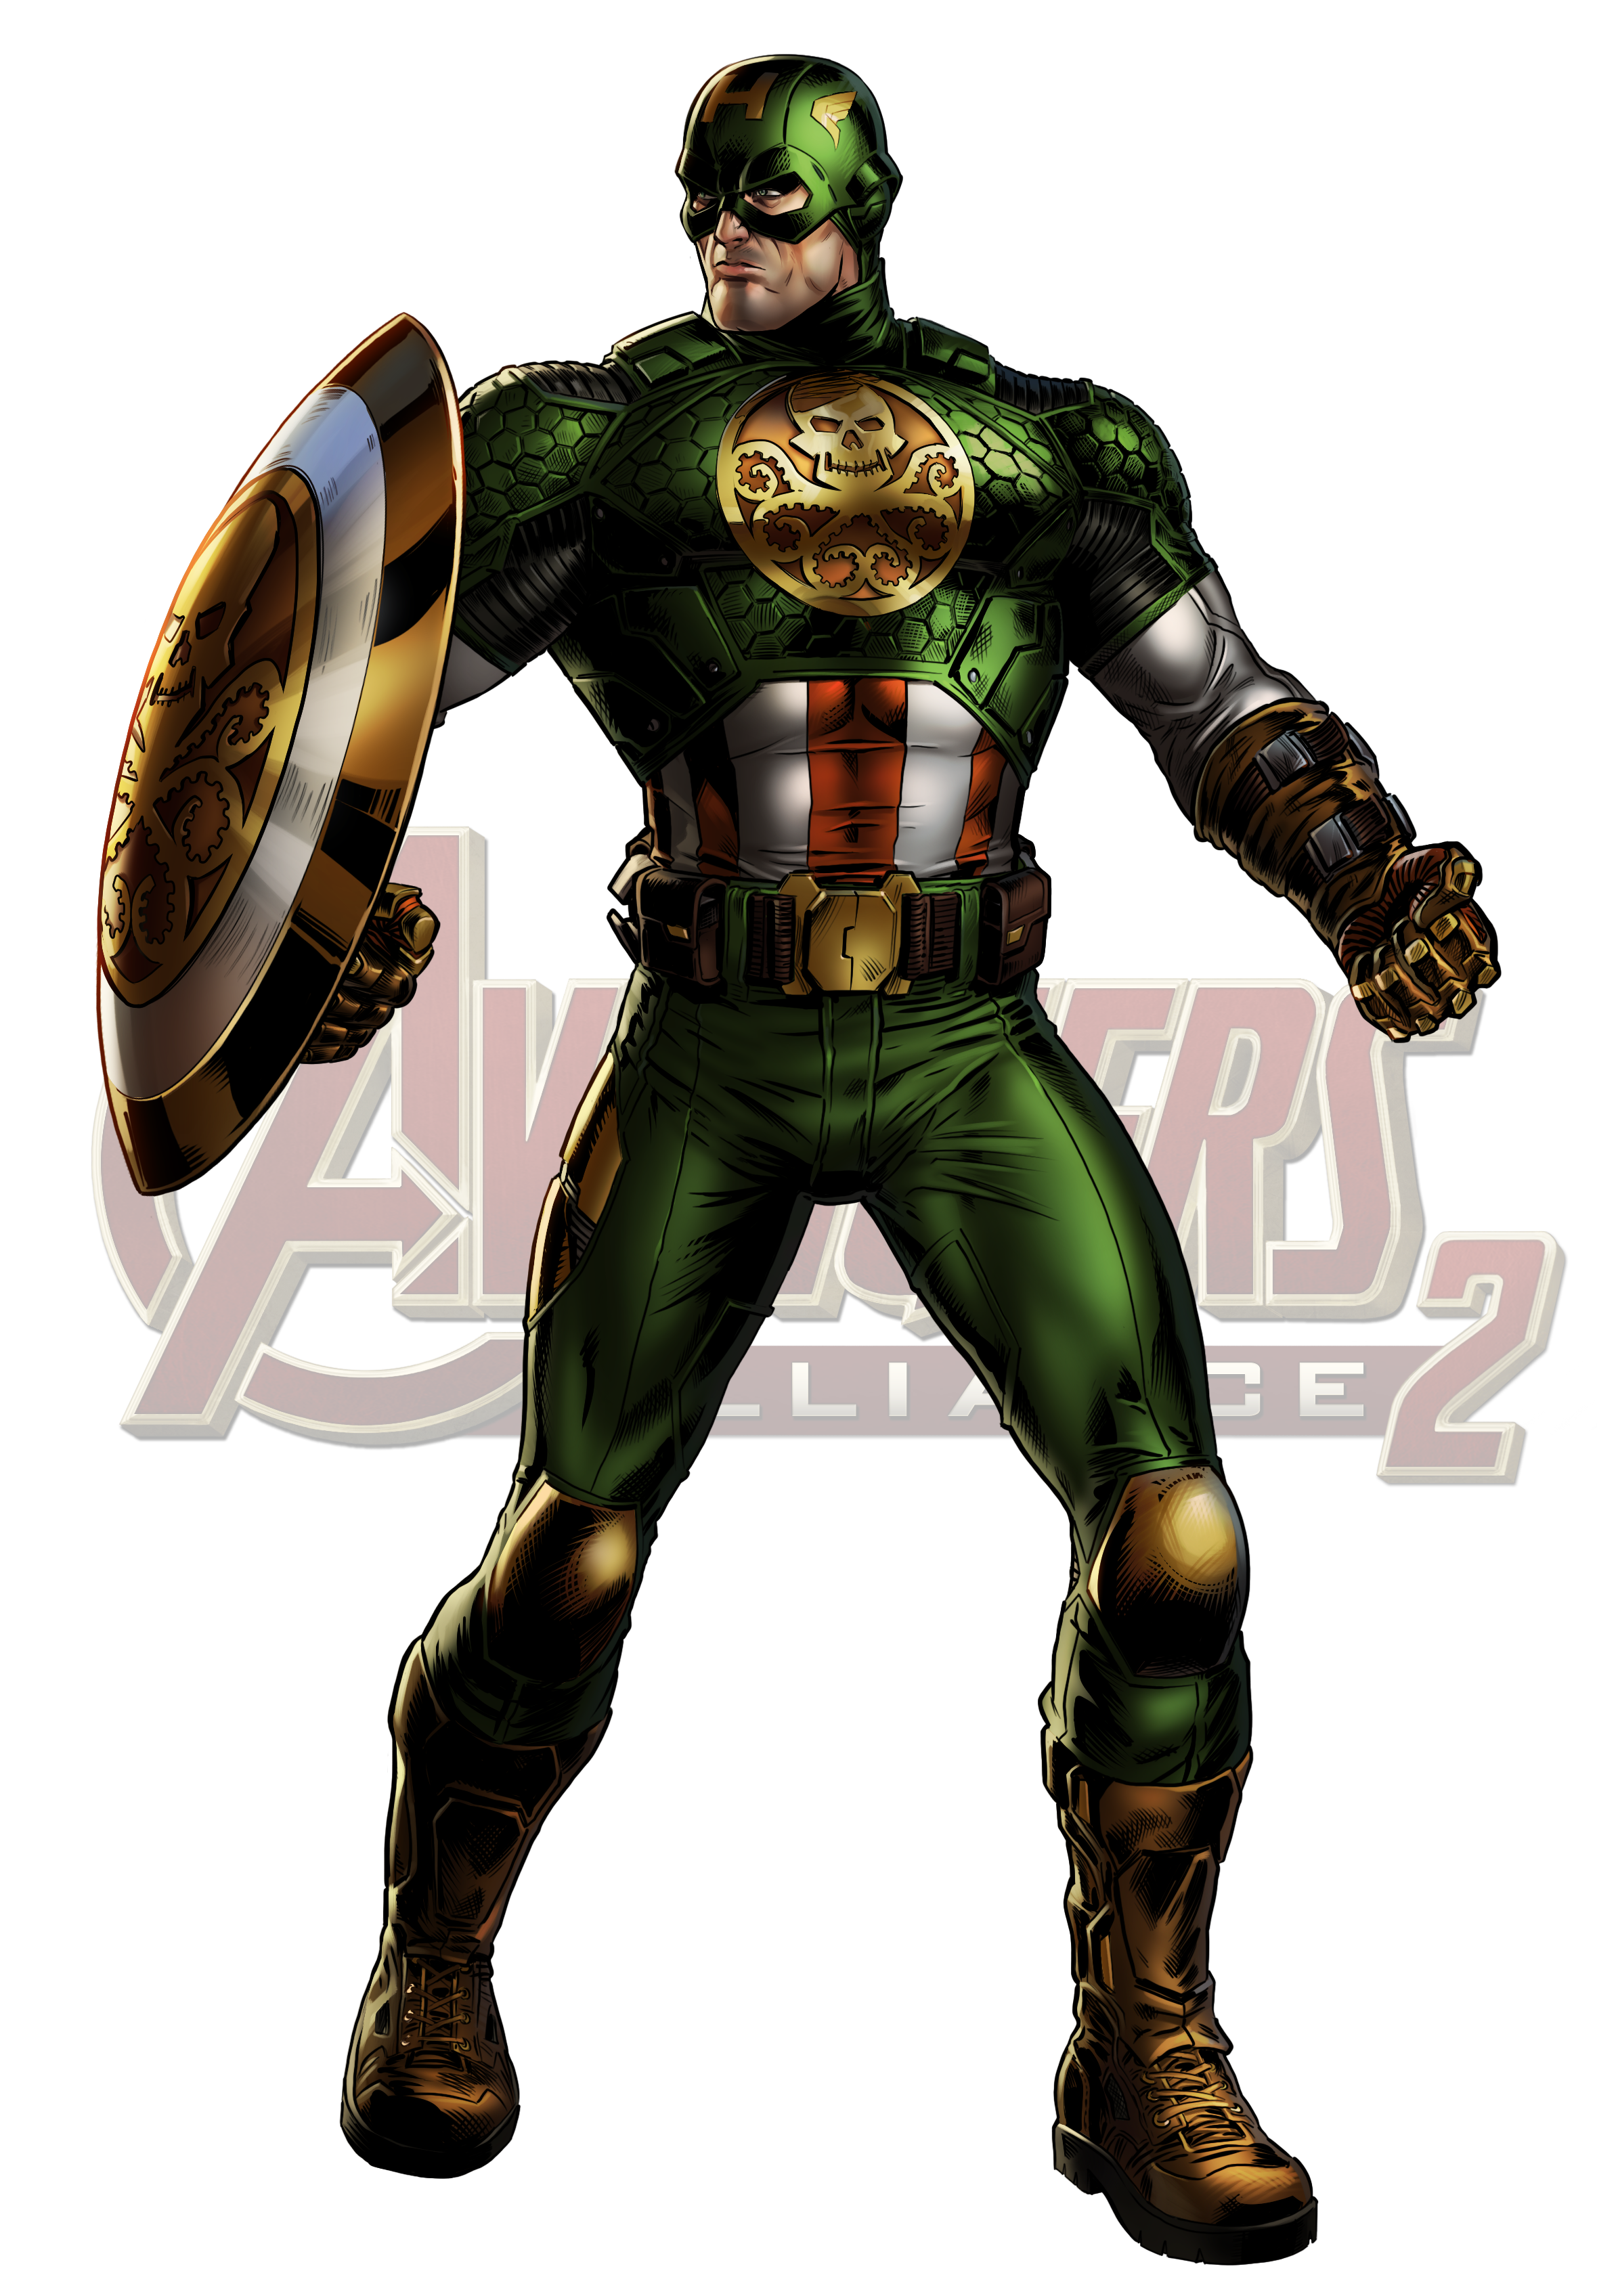 Marvel: Avengers Alliance #20